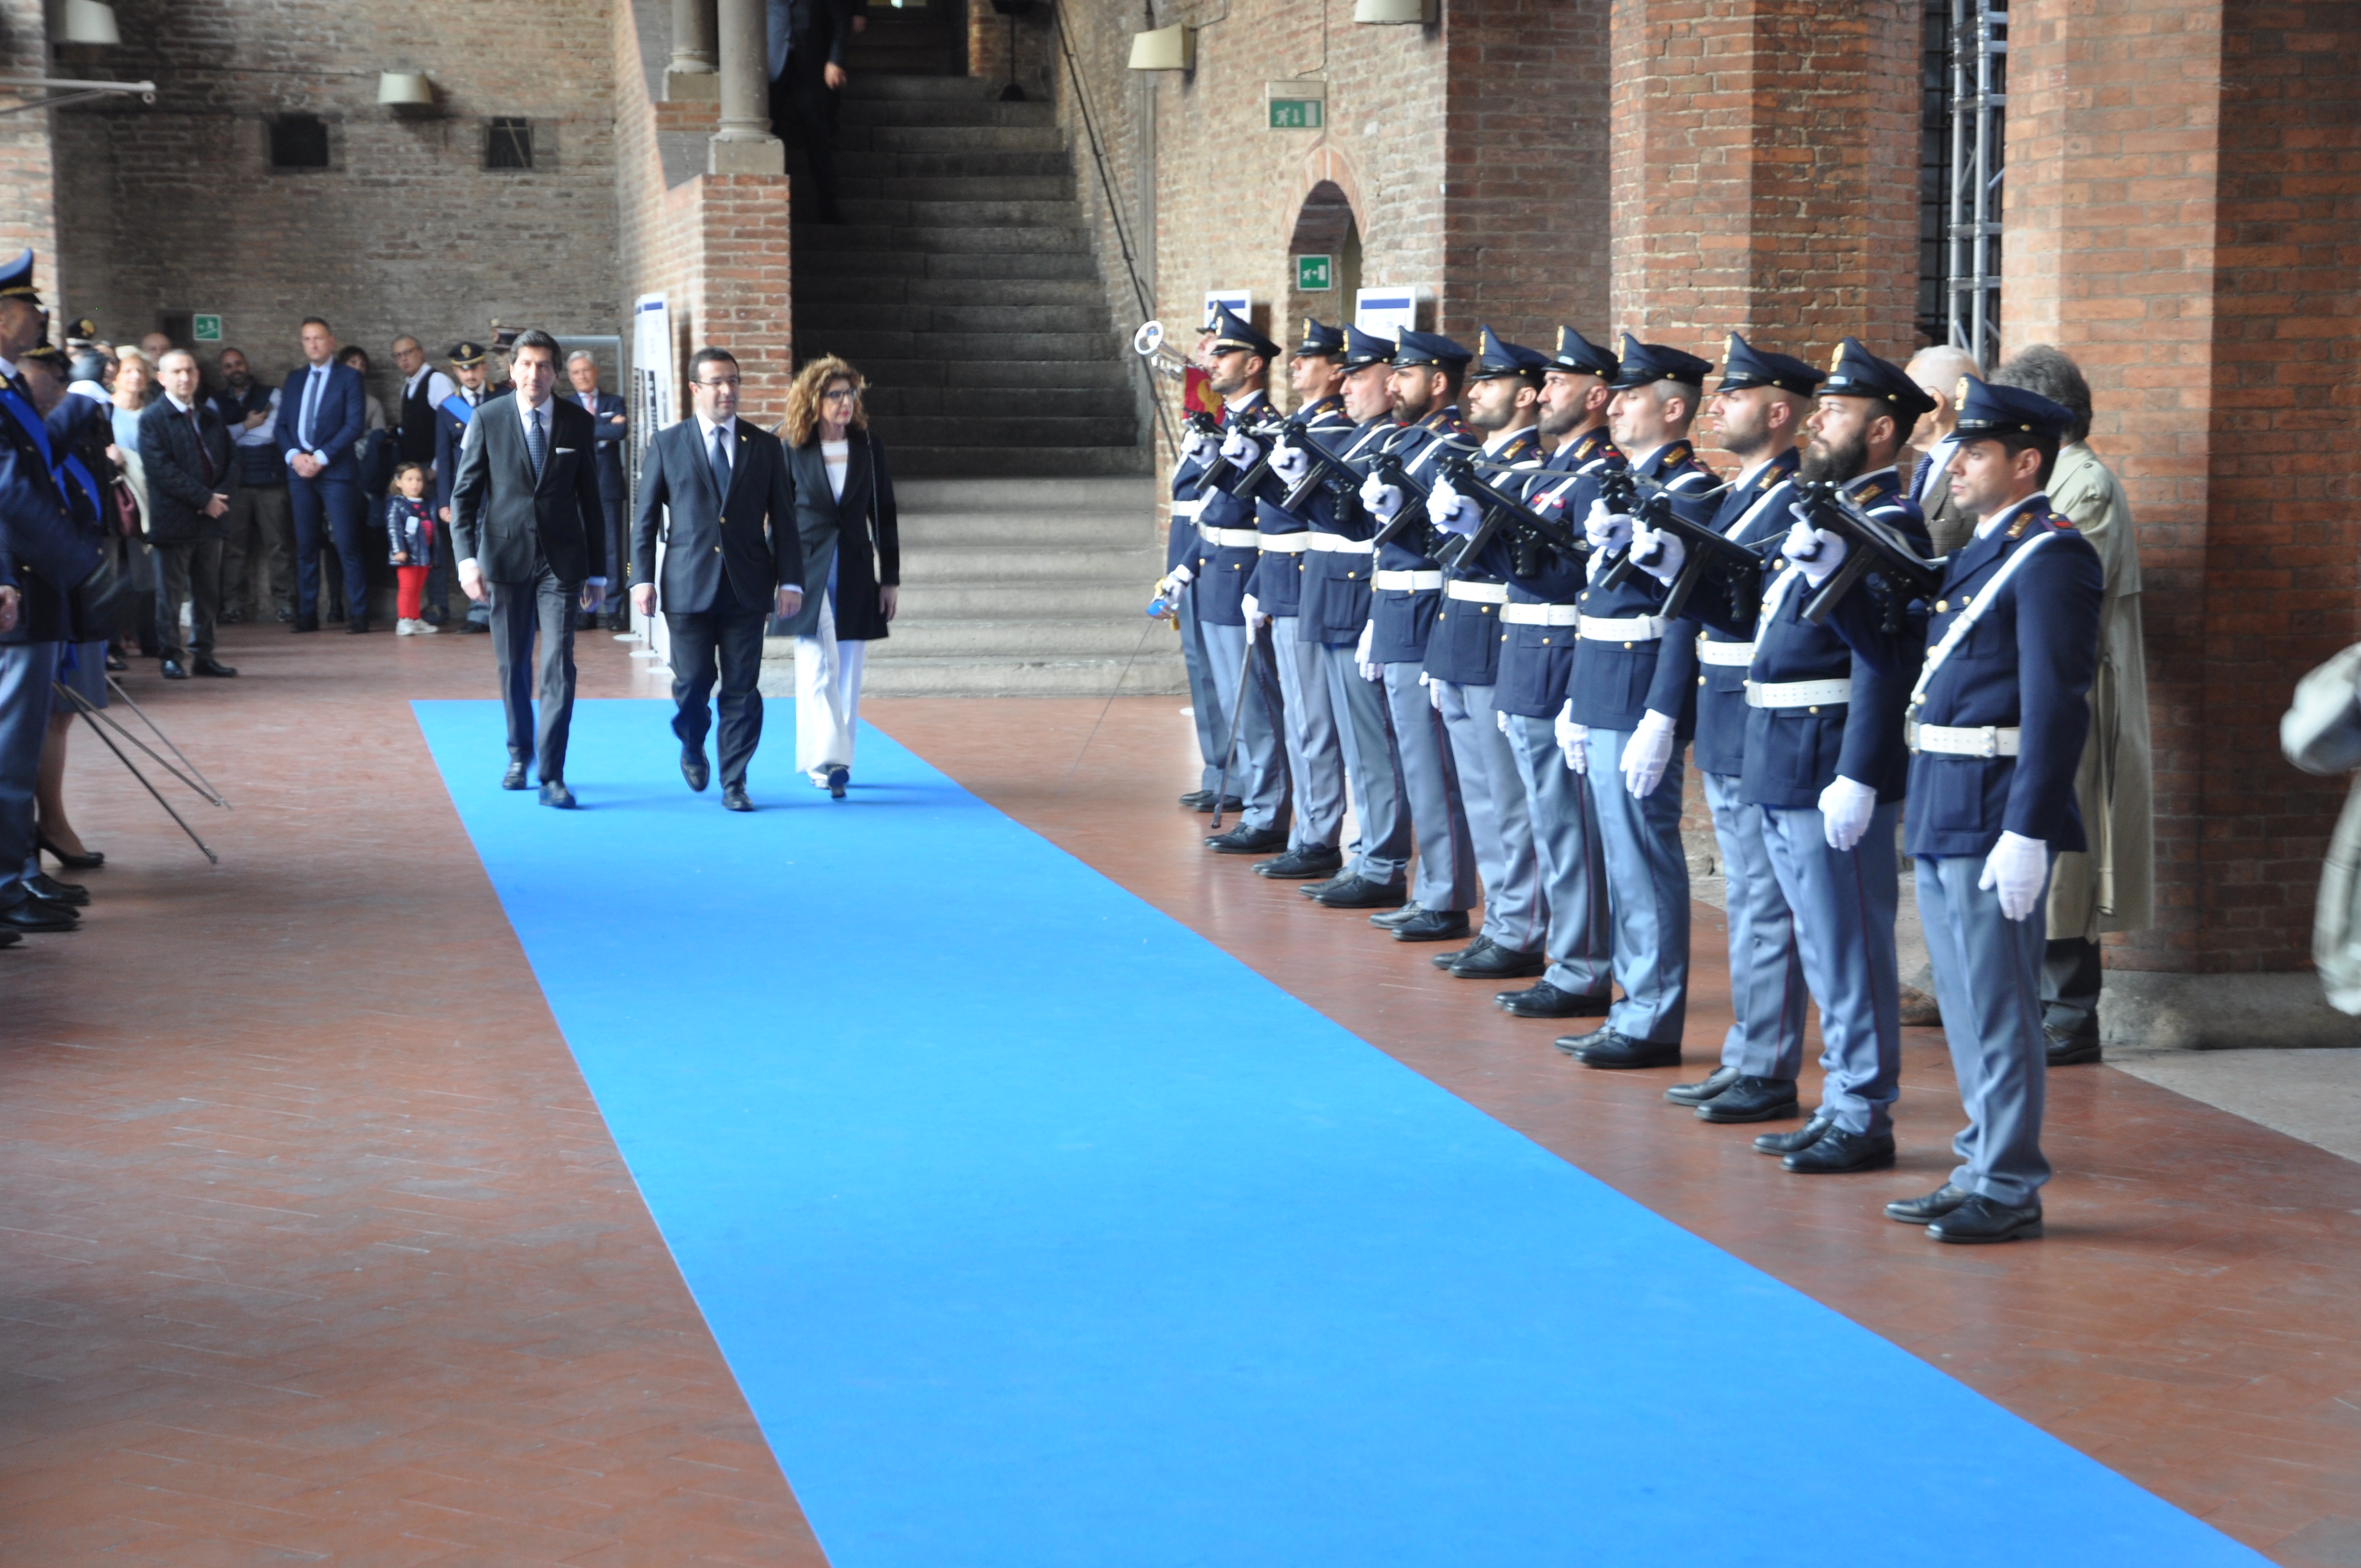 Le celebrazioni del 167° anniversario della fondazione della Polizia nella città di Bologna